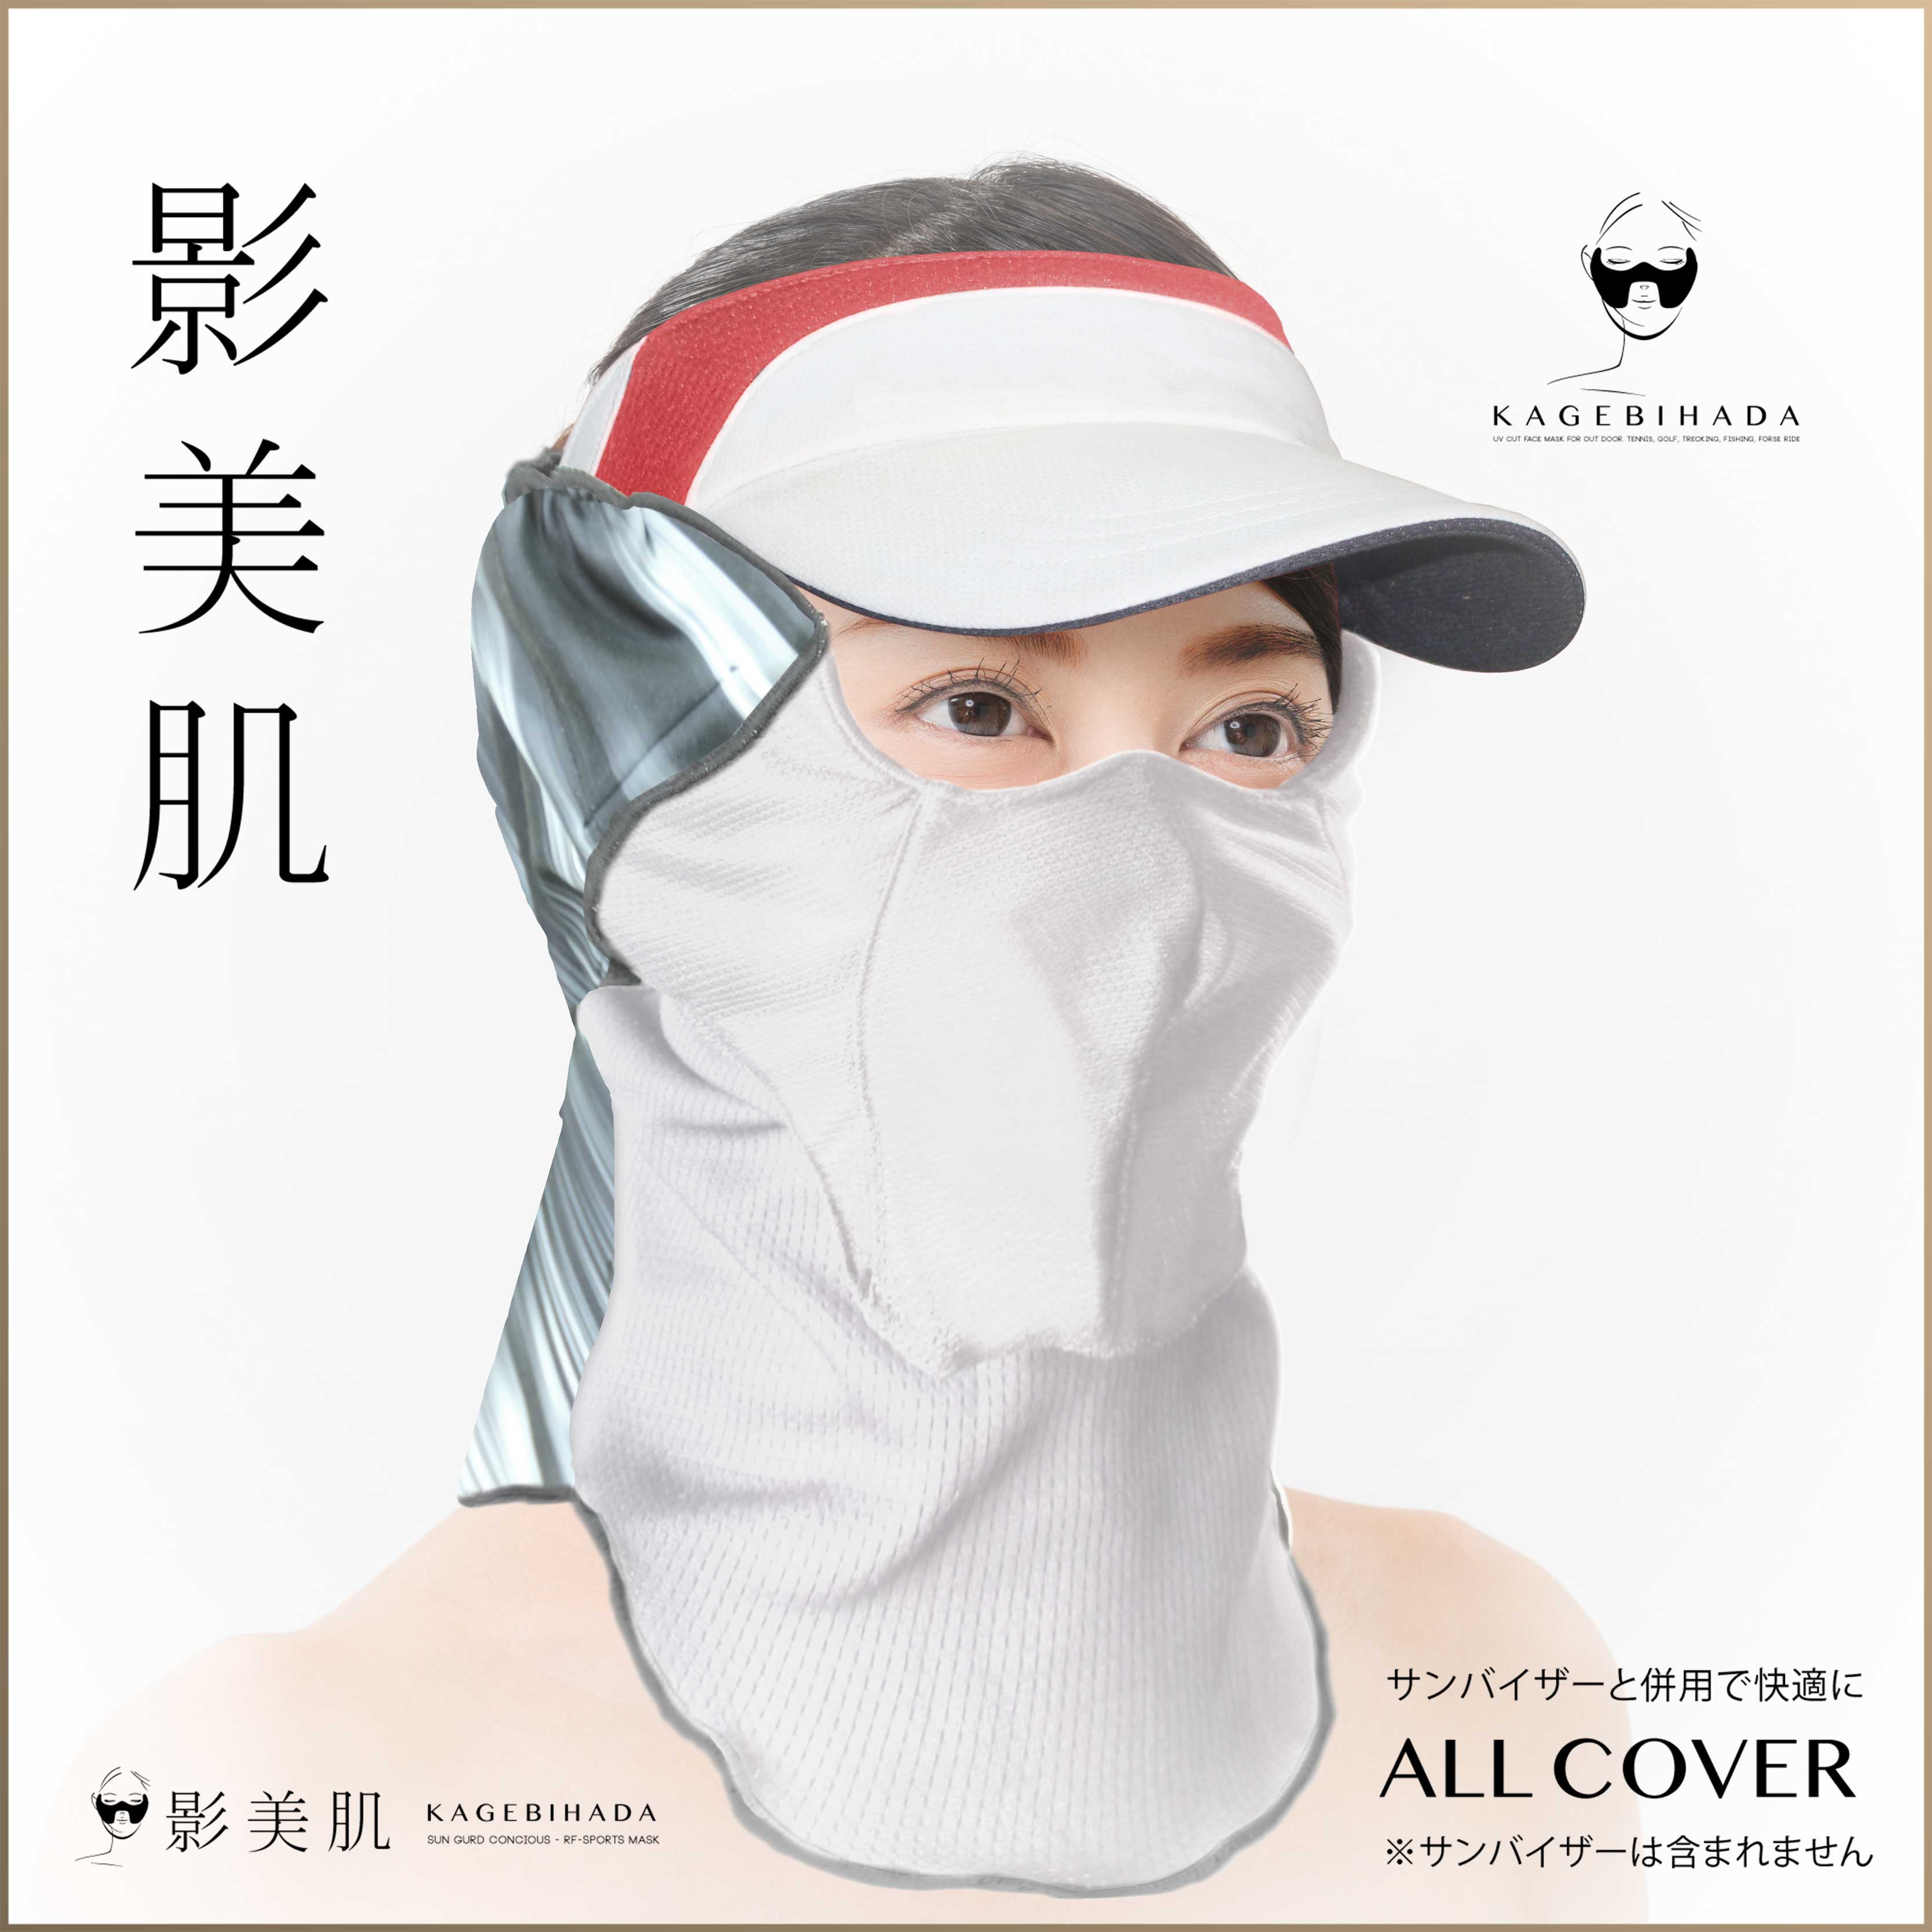 影美肌 プレミアムUVカットマスク 影美肌公式販売サイト / 影美肌-KAGEBIHADA オールカバー ボーダー ホワイト